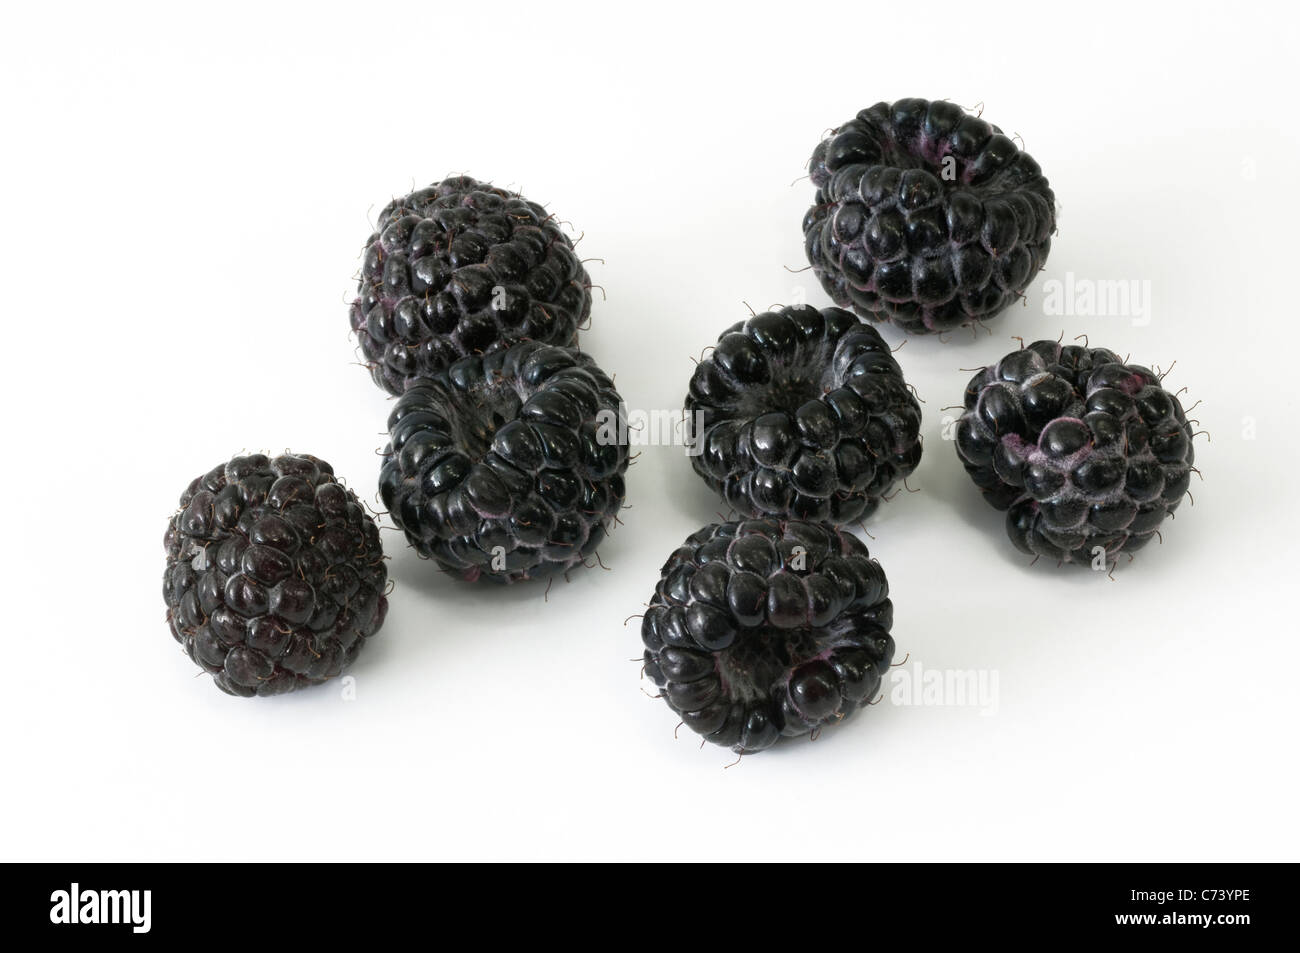 Perle schwarz Himbeer (Rubus Occidentalis schwarze Juwel). Reifen Beeren. Studio Bild vor einem weißen Hintergrund. Stockfoto